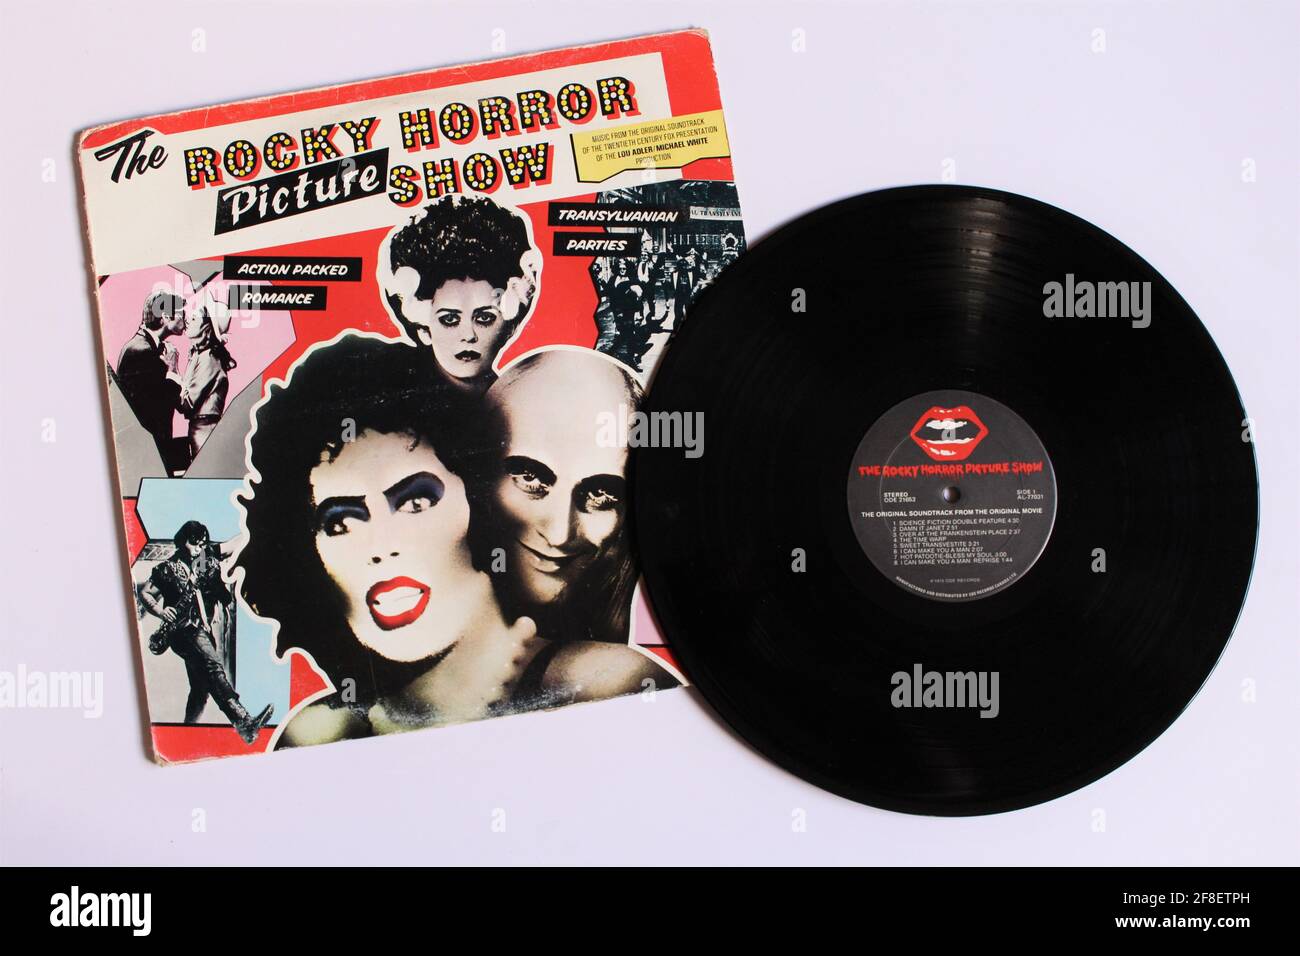 The Rocky Horror Picture Show è l'album musicale originale del film del 1975. Album su disco LP vinile. Copertina album Foto Stock